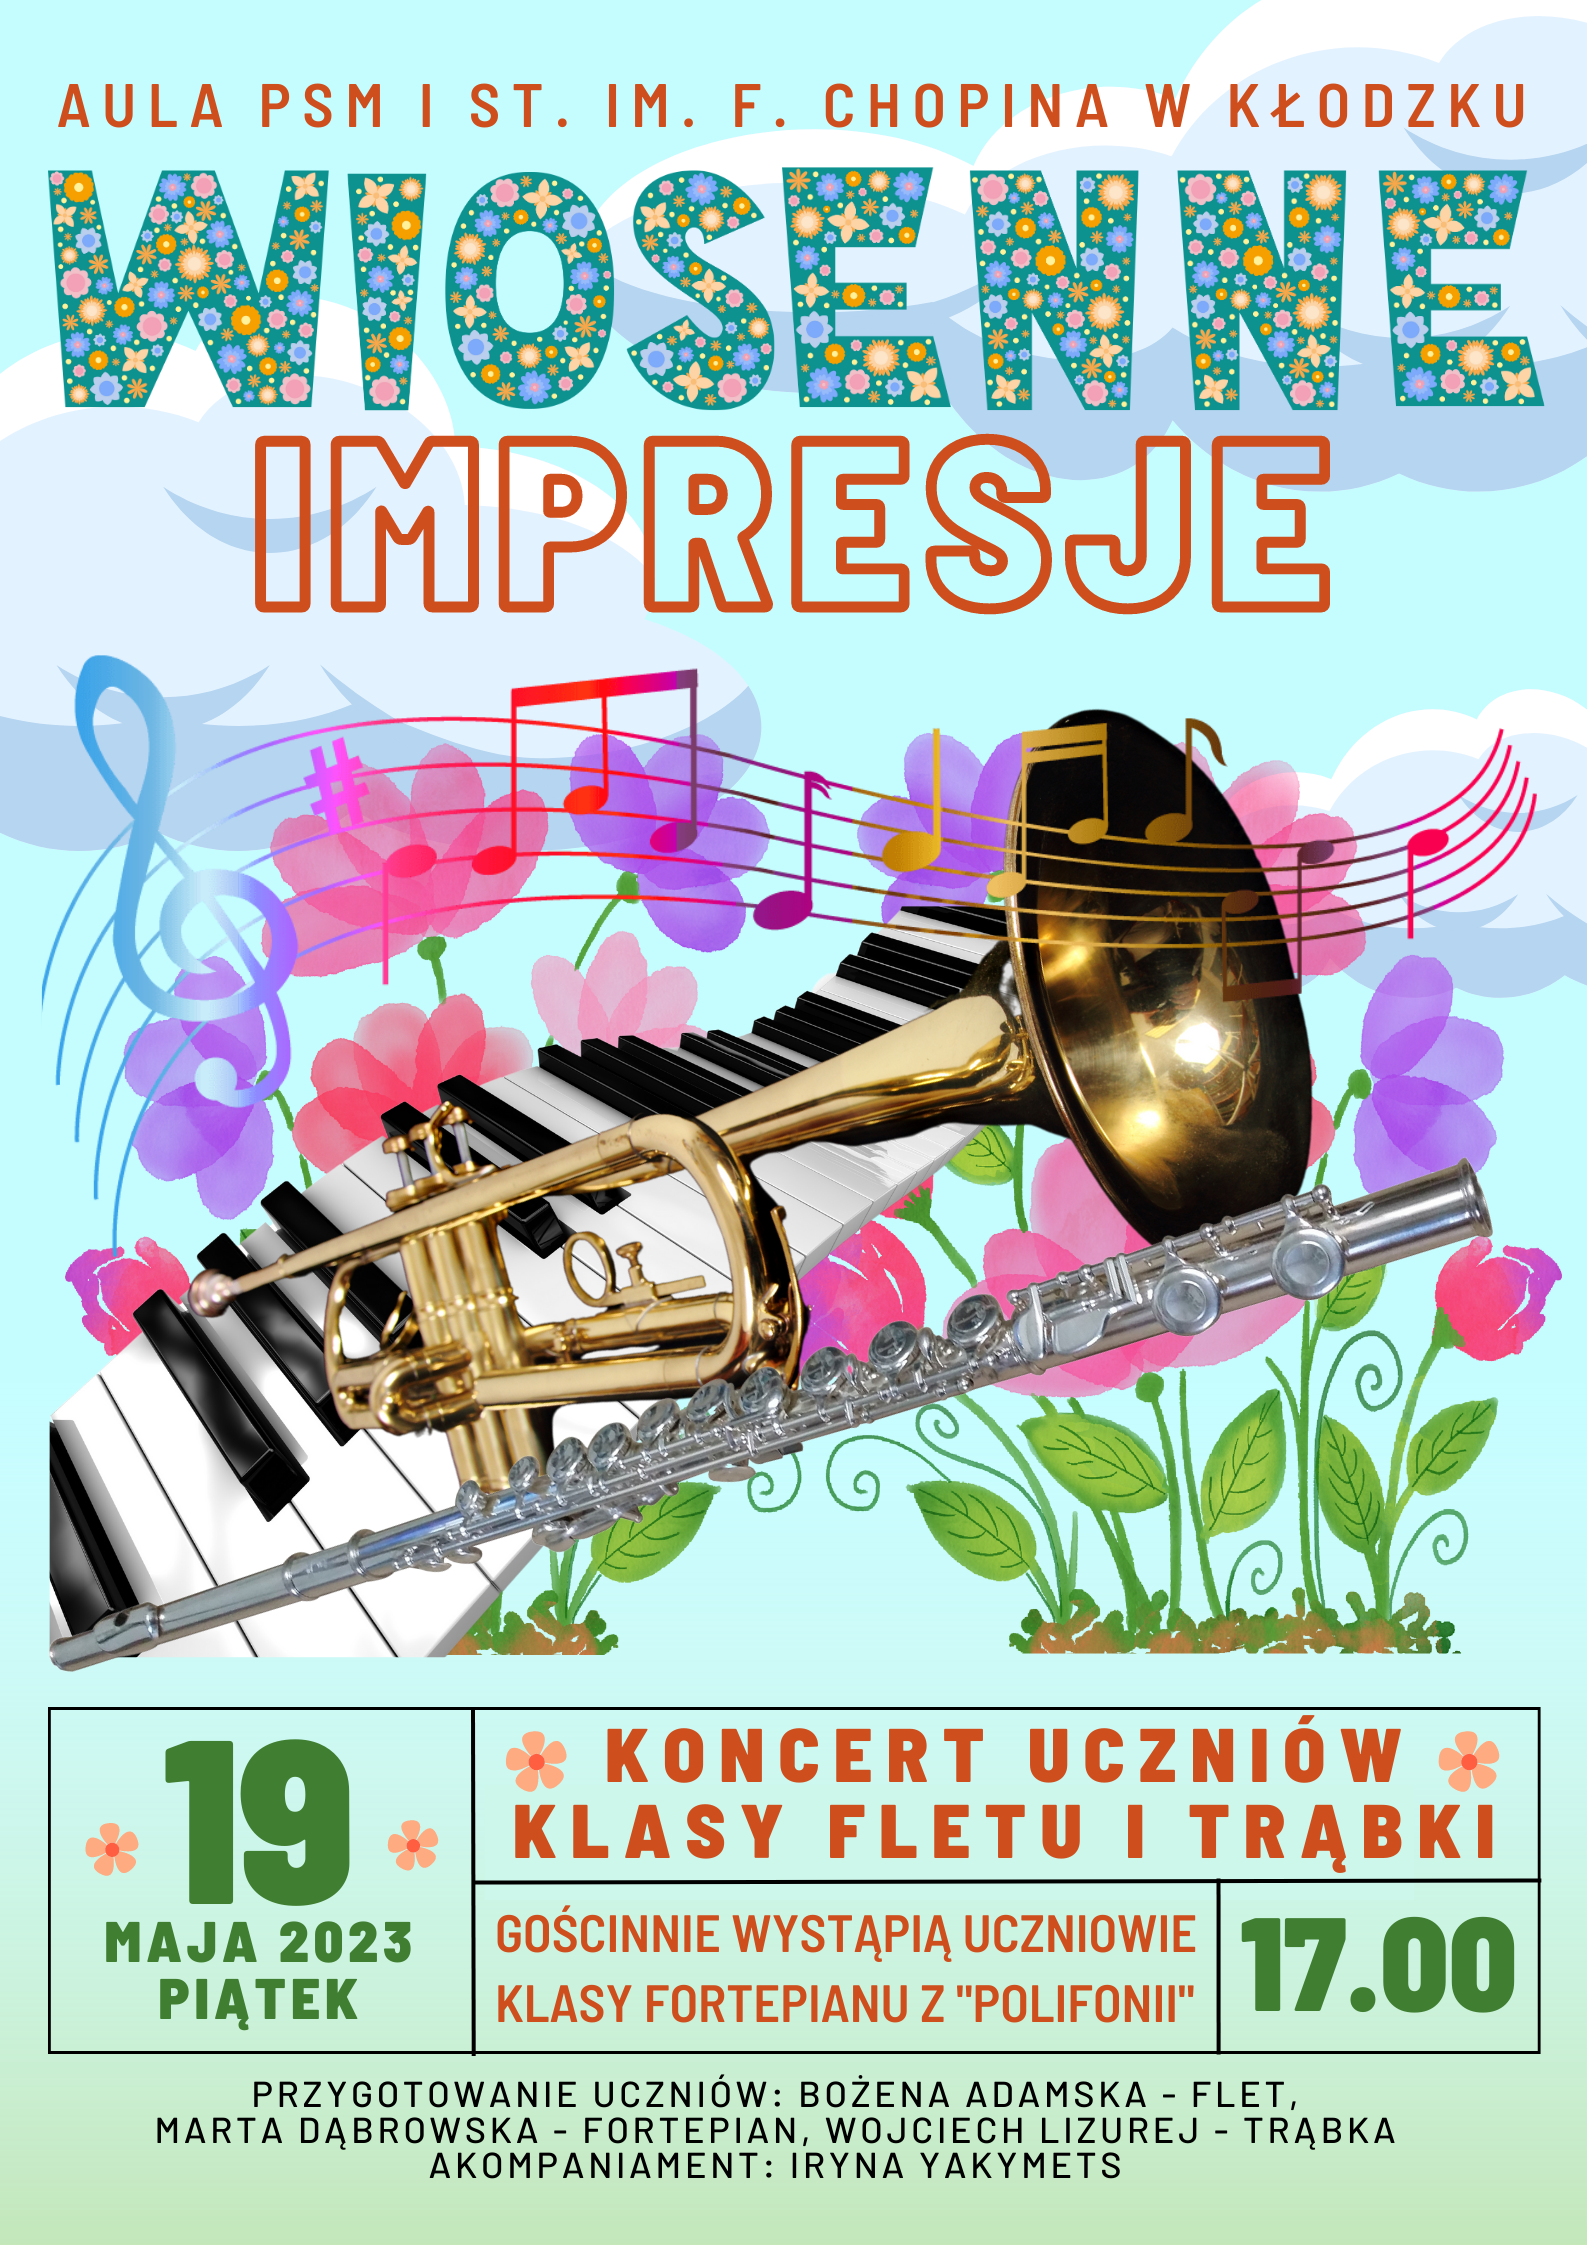 Plakat na zielonym tle z grafiką instrumentów oraz szczegółowymi informacjami dotyczącymi koncertu uczniów klasy fletu i trąbki 19 maja 2023